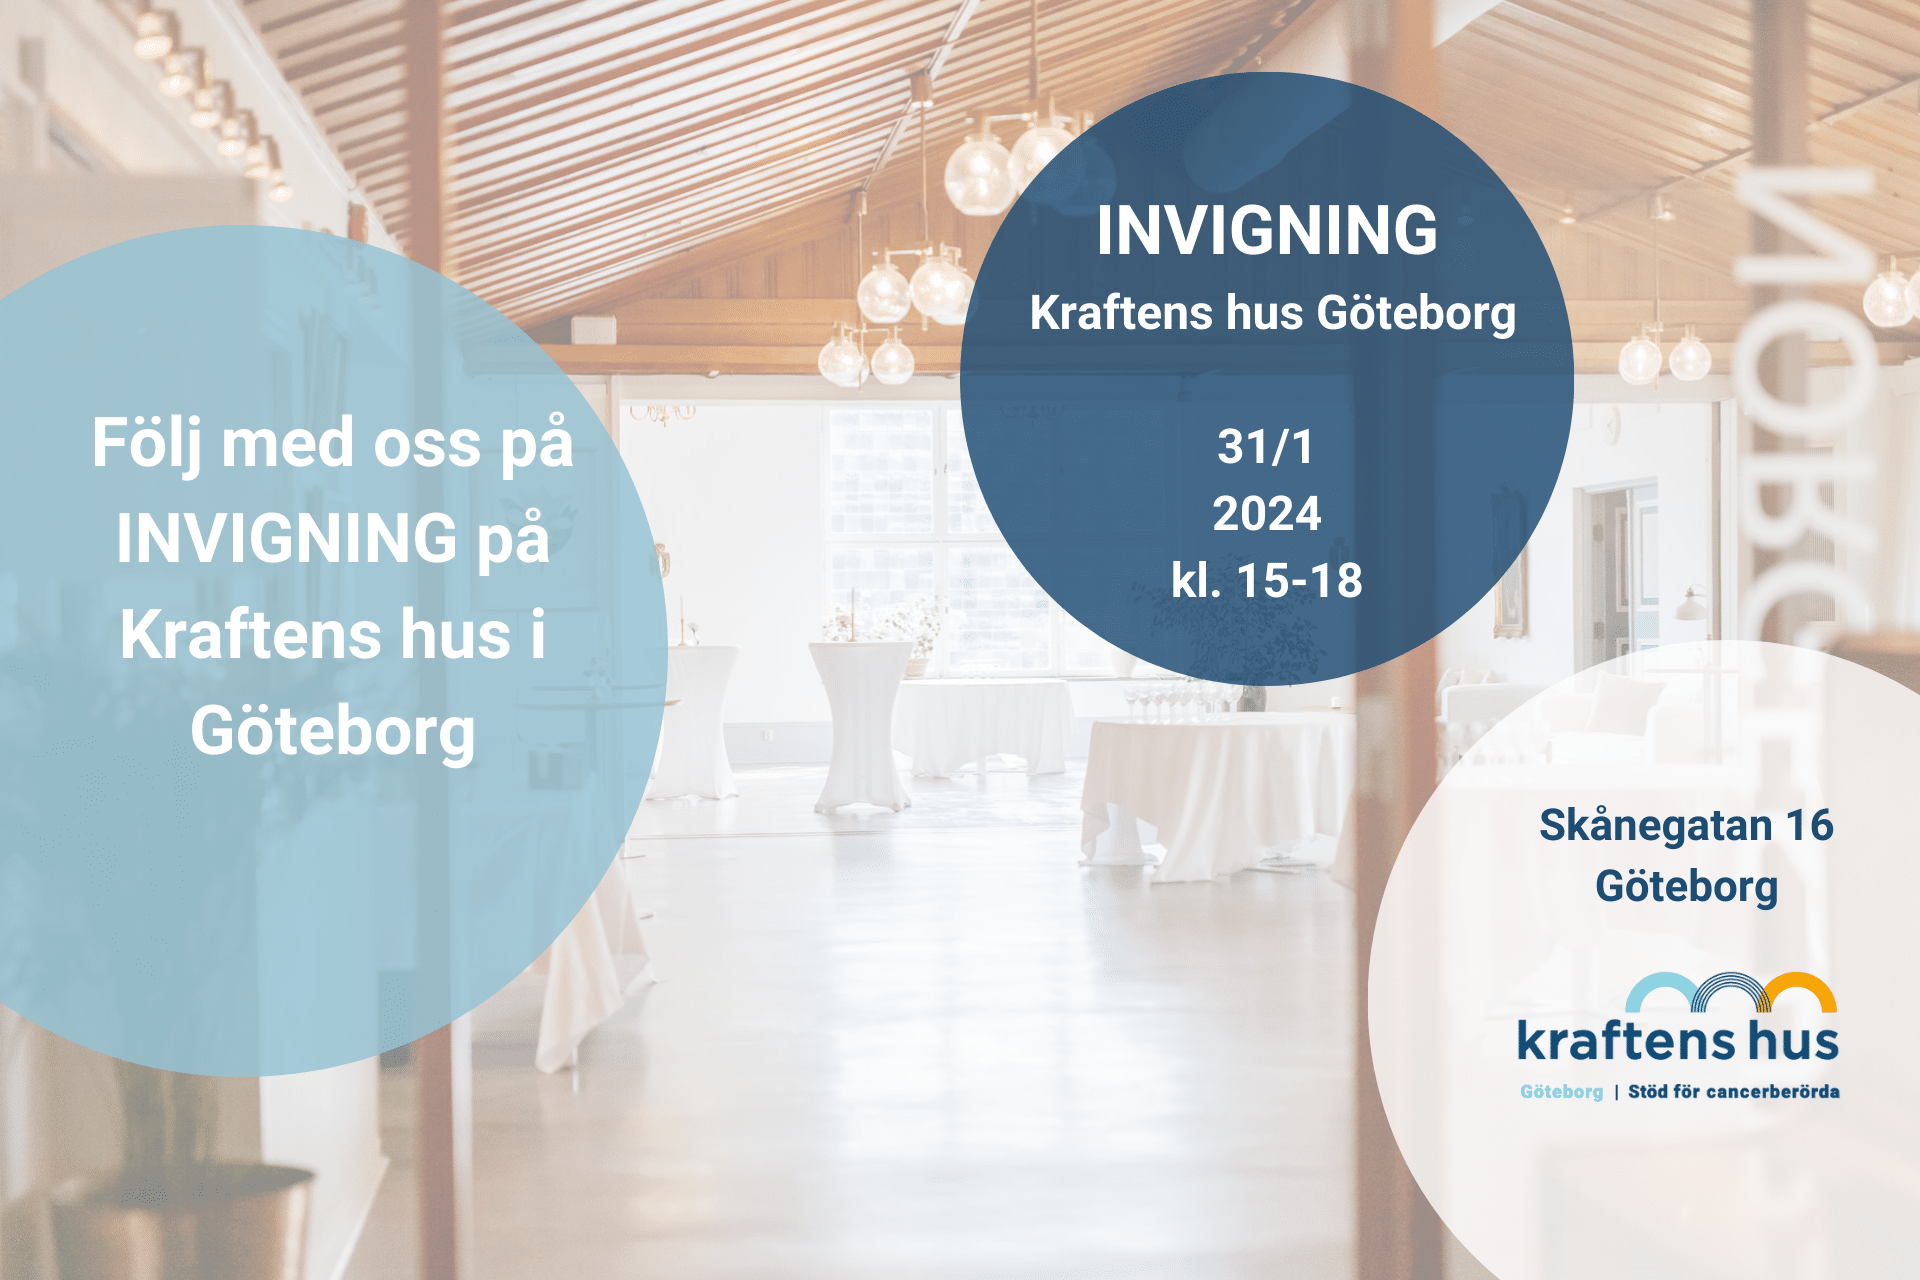 Följ med till invigningen av Kraftens hus Göteborg 31/1 2024